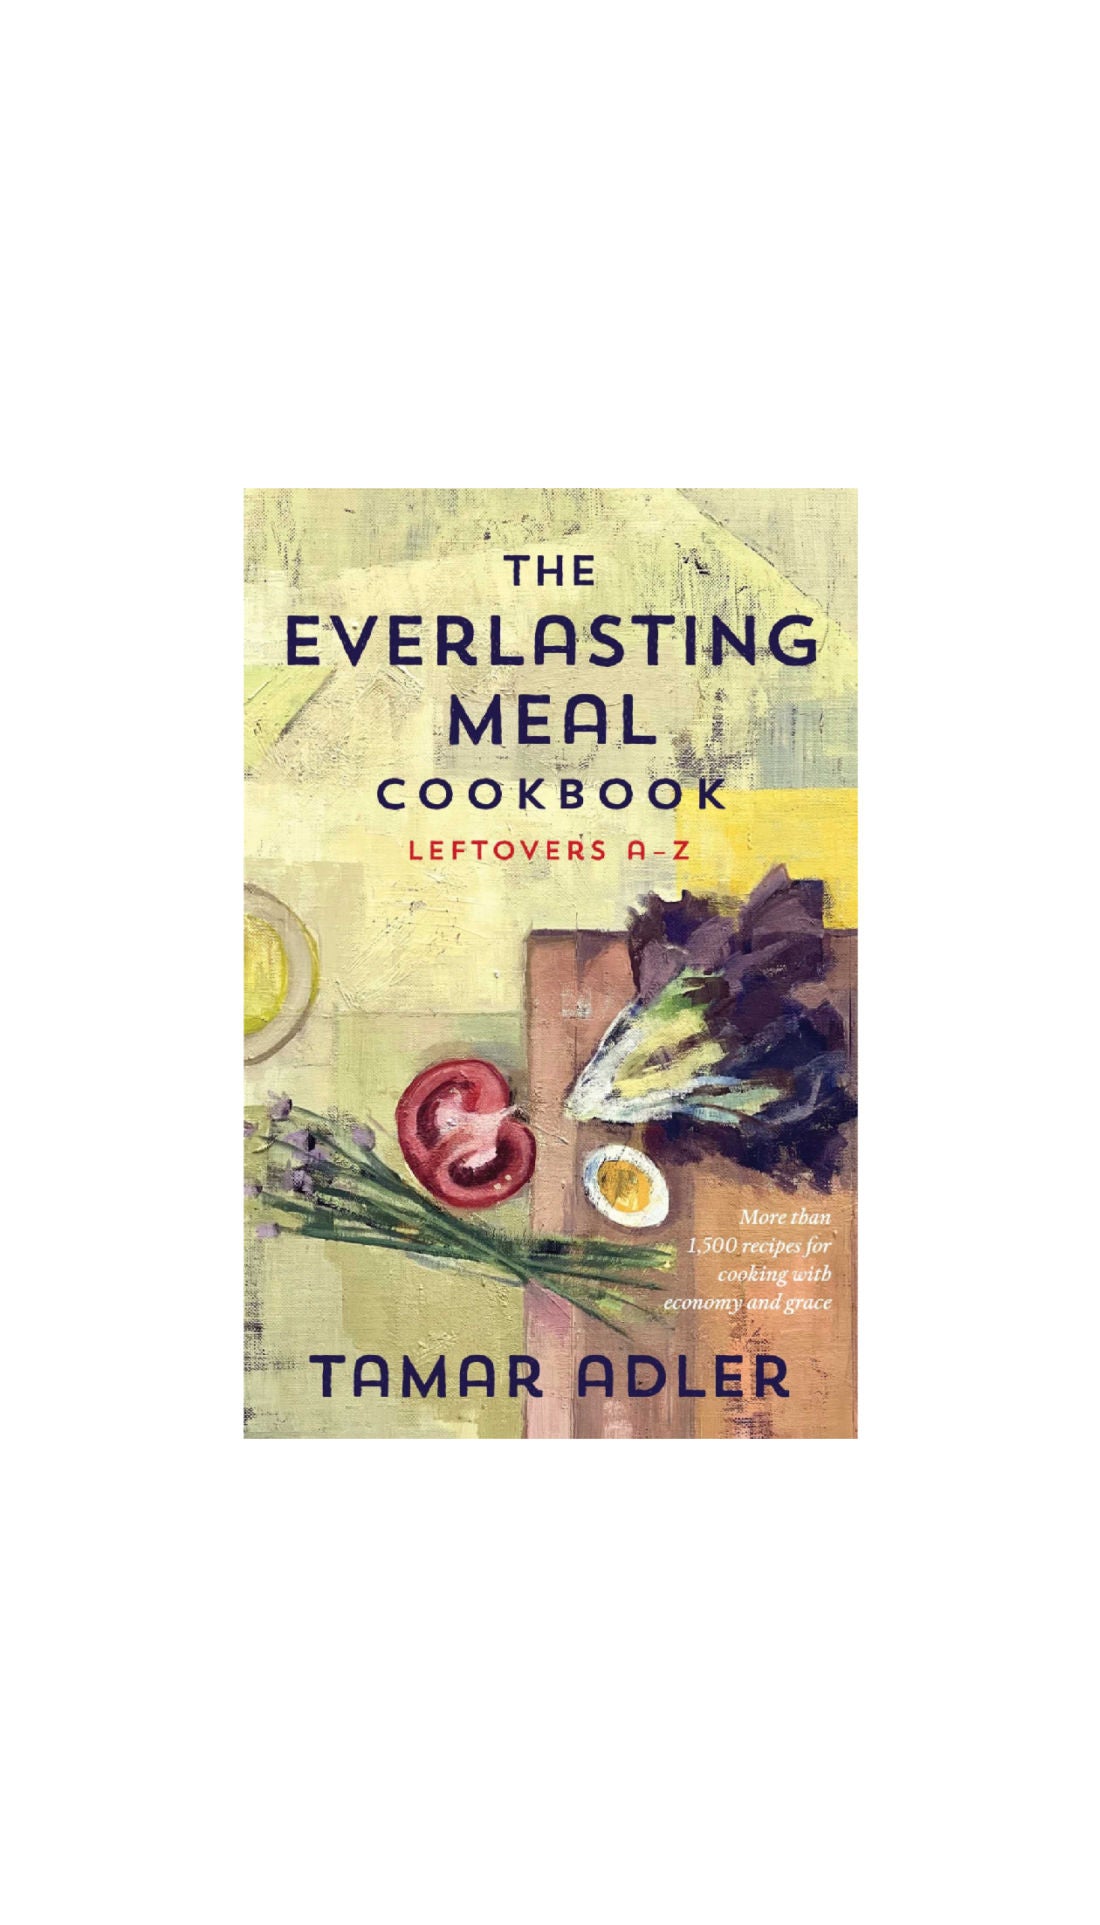 The Everlasting Meal Cookbook: Leftovers A-Z / TAMAR ADLER